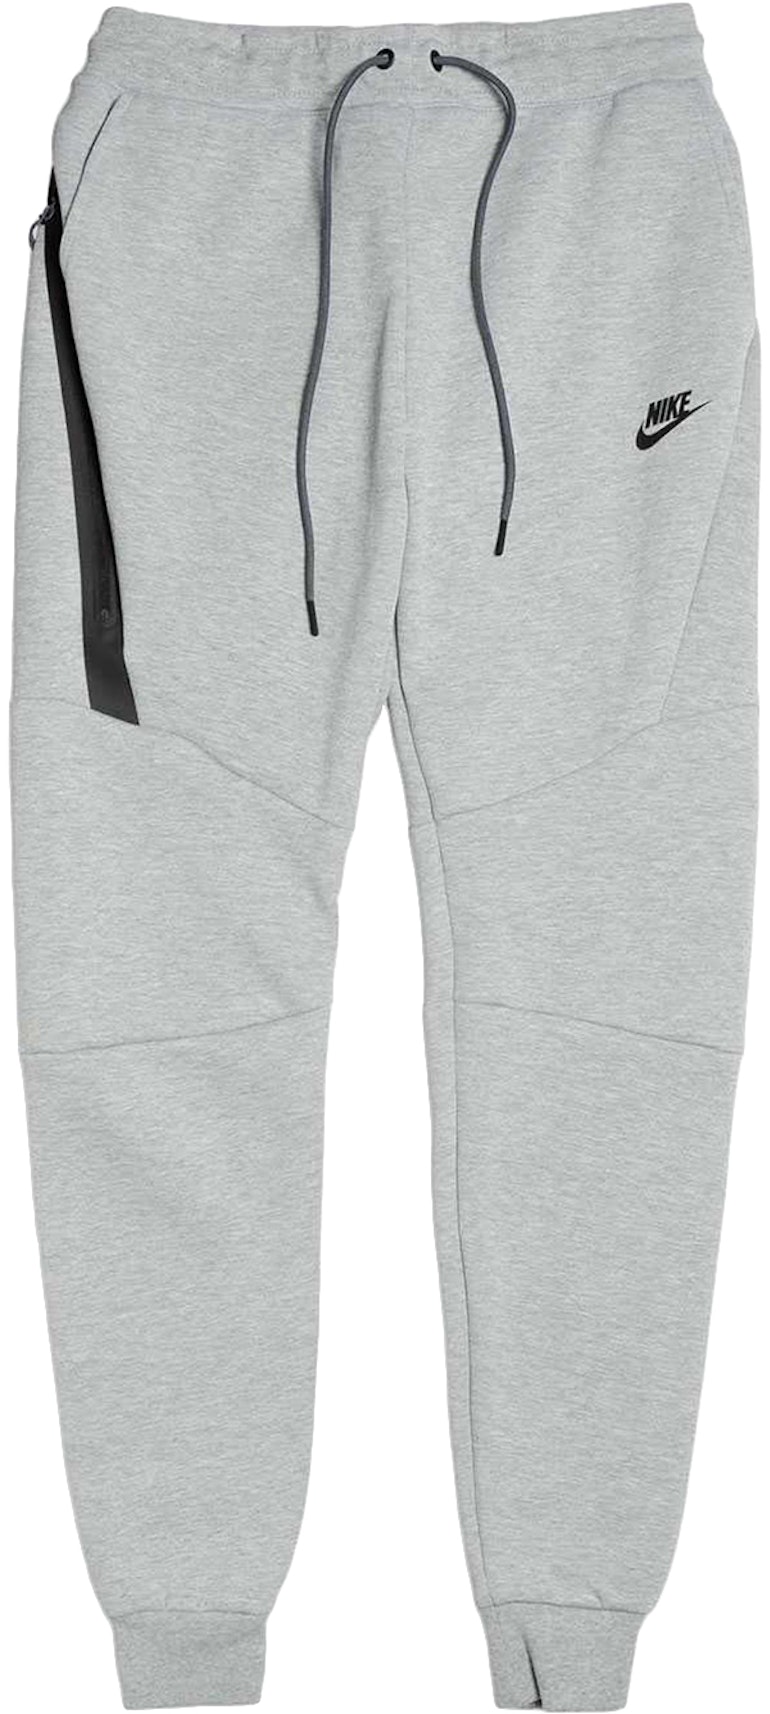 Tren Movilizar Fraternidad Nike Sportswear Tech Fleece Pant Grey/Black Men's - US